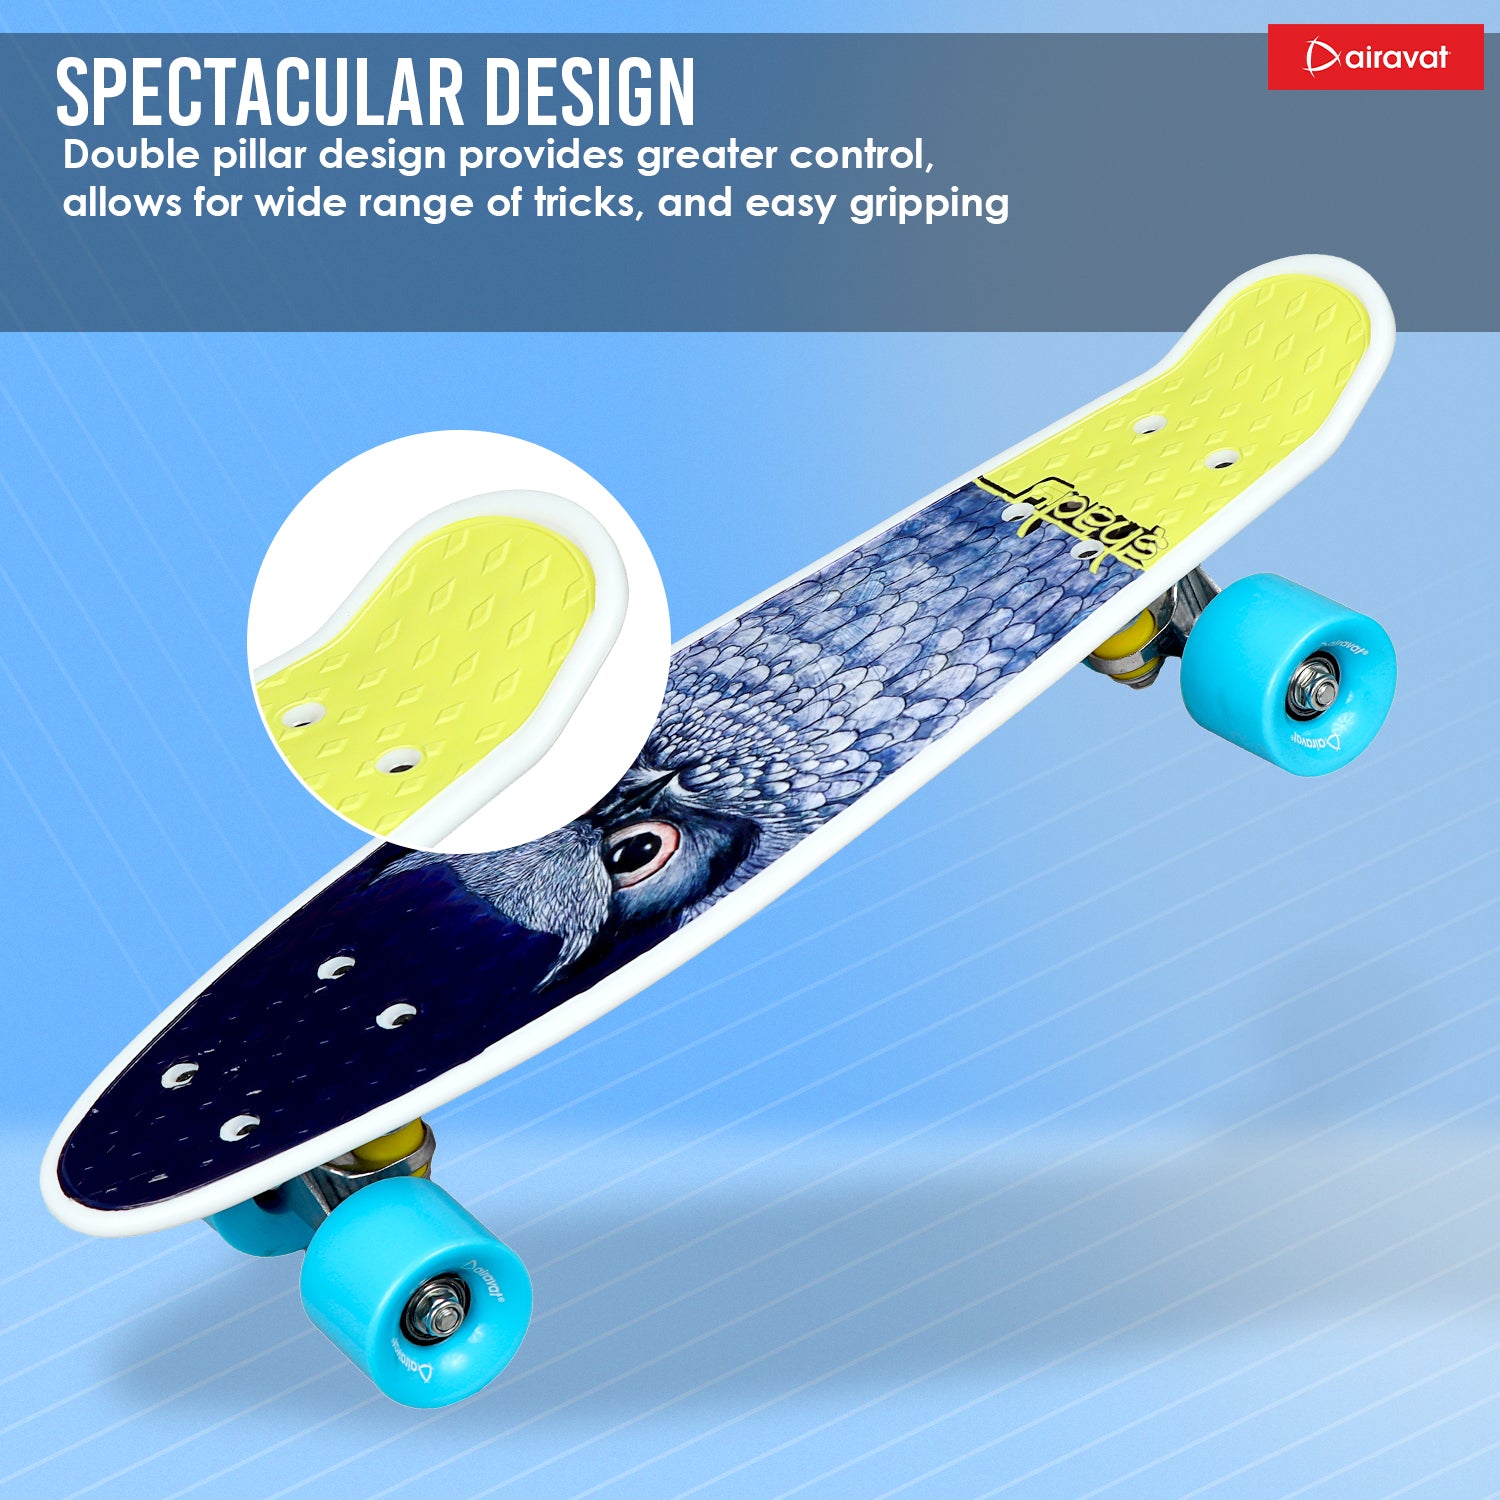 7811-skateboard-style-3-spectacular-design